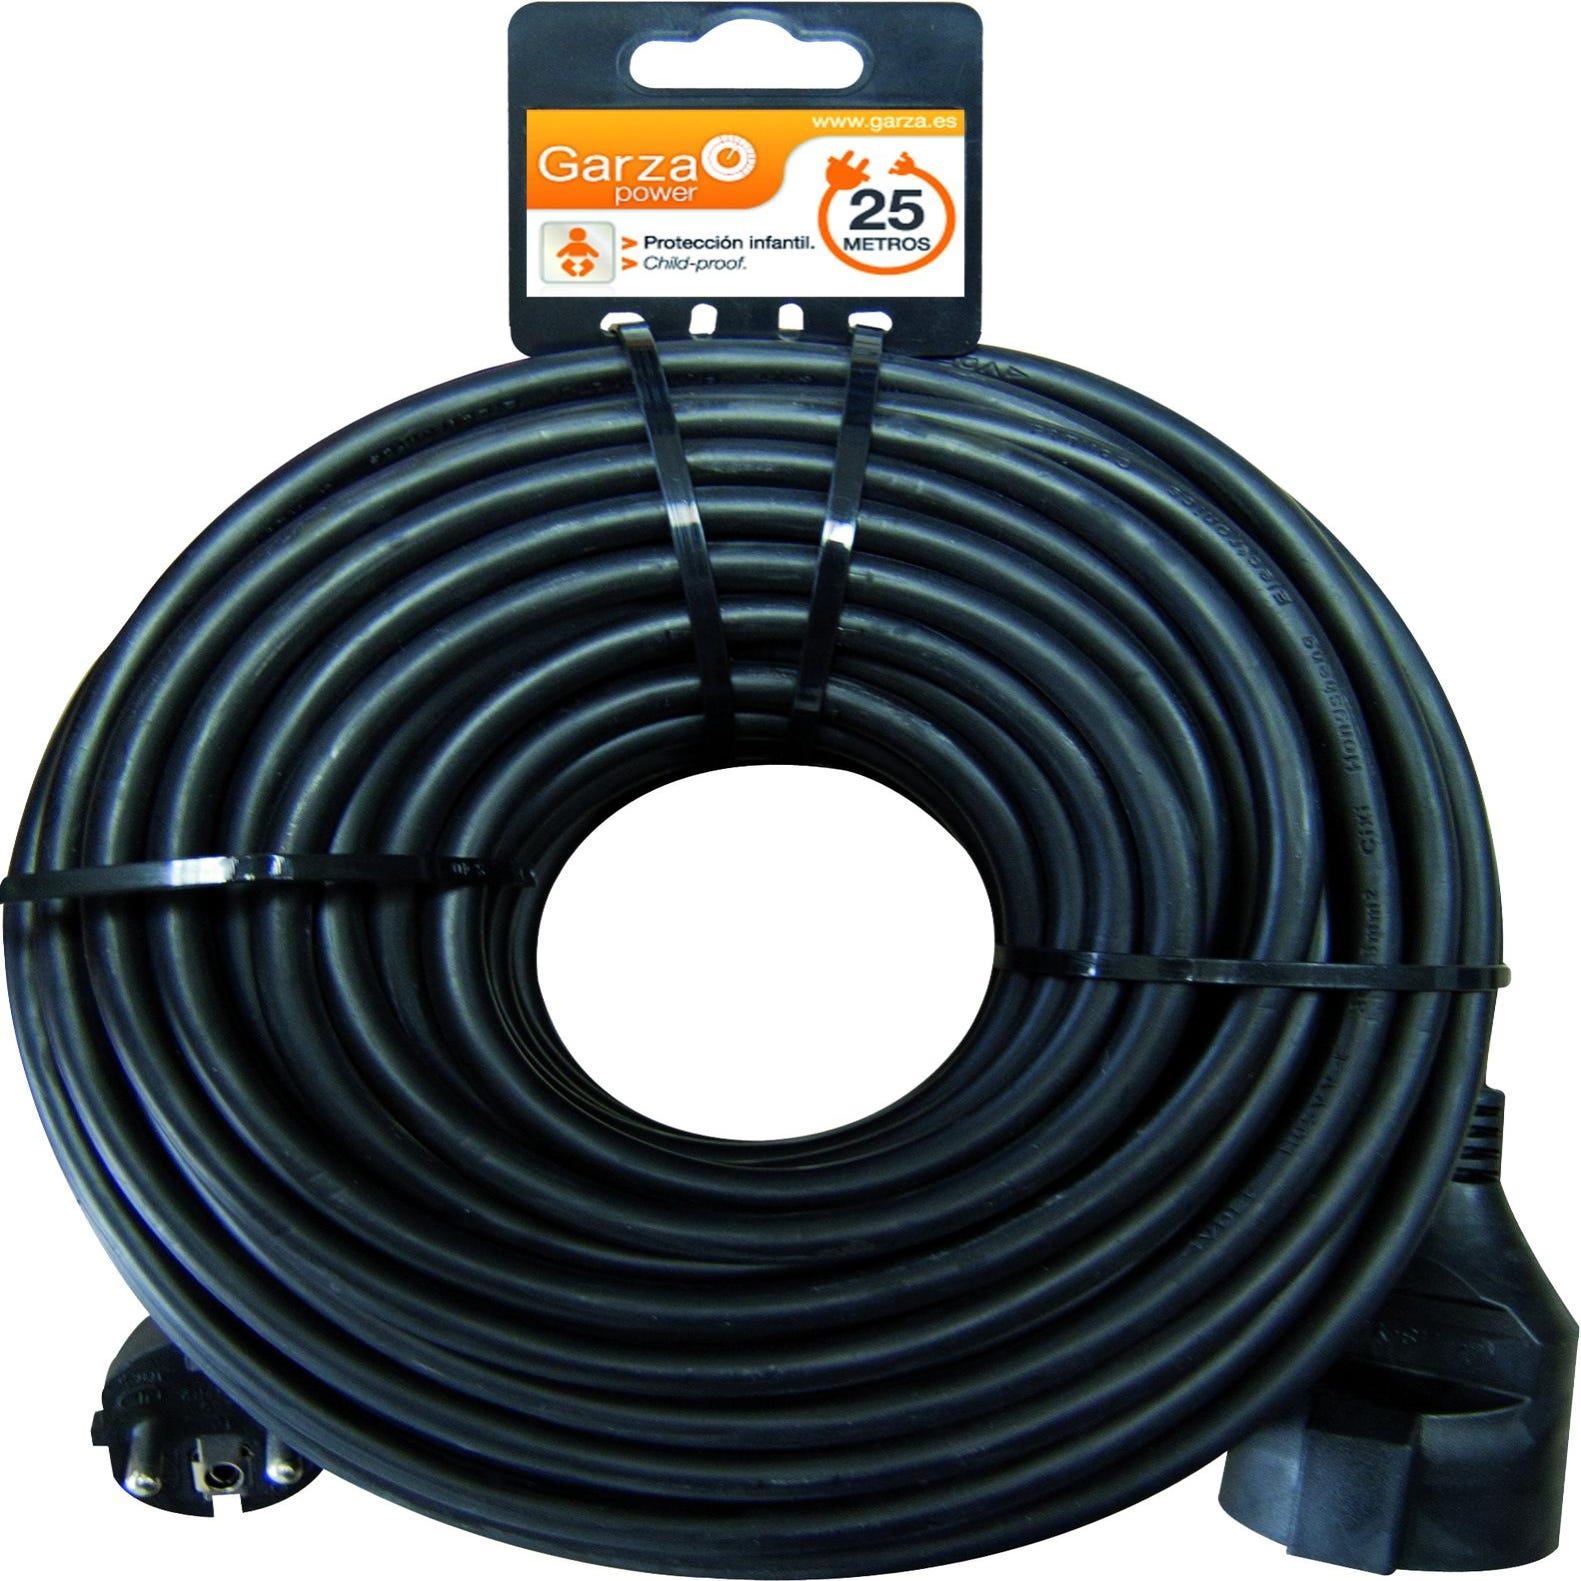 Garza - Cable alargador de corriente doméstico de 25 metros, negro